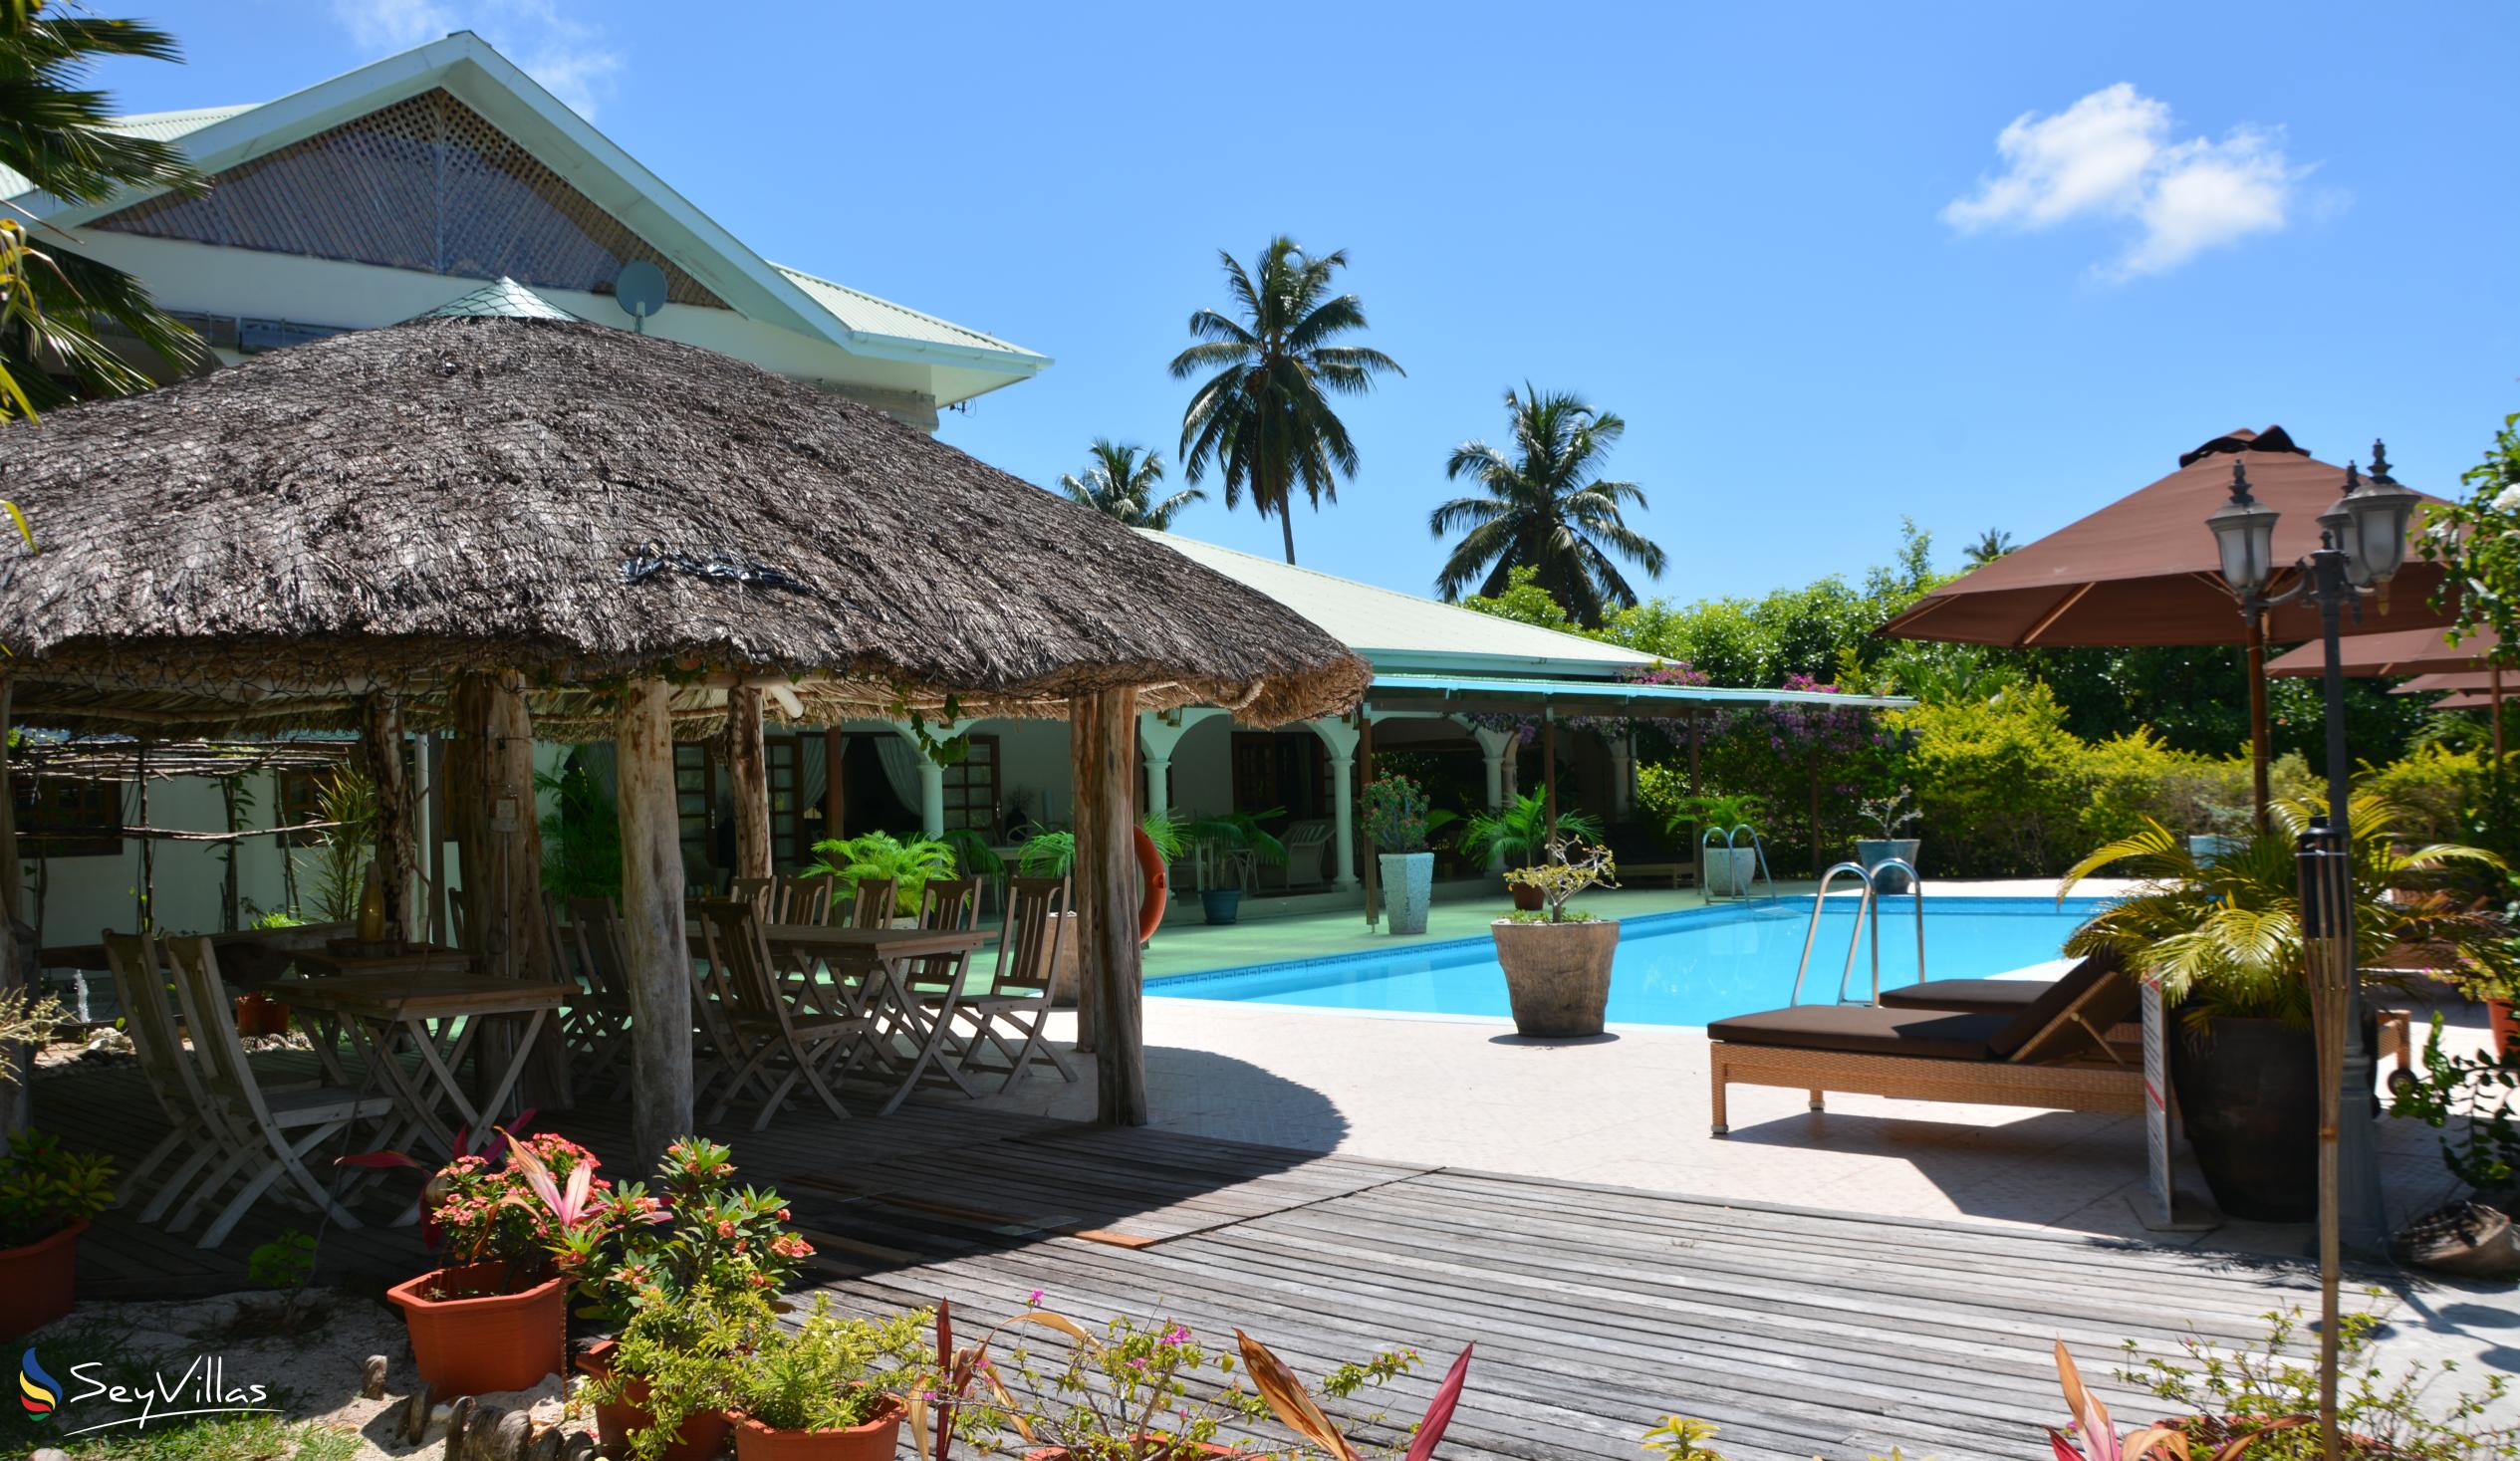 Foto 7: Villa de Cerf - Esterno - Cerf Island (Seychelles)